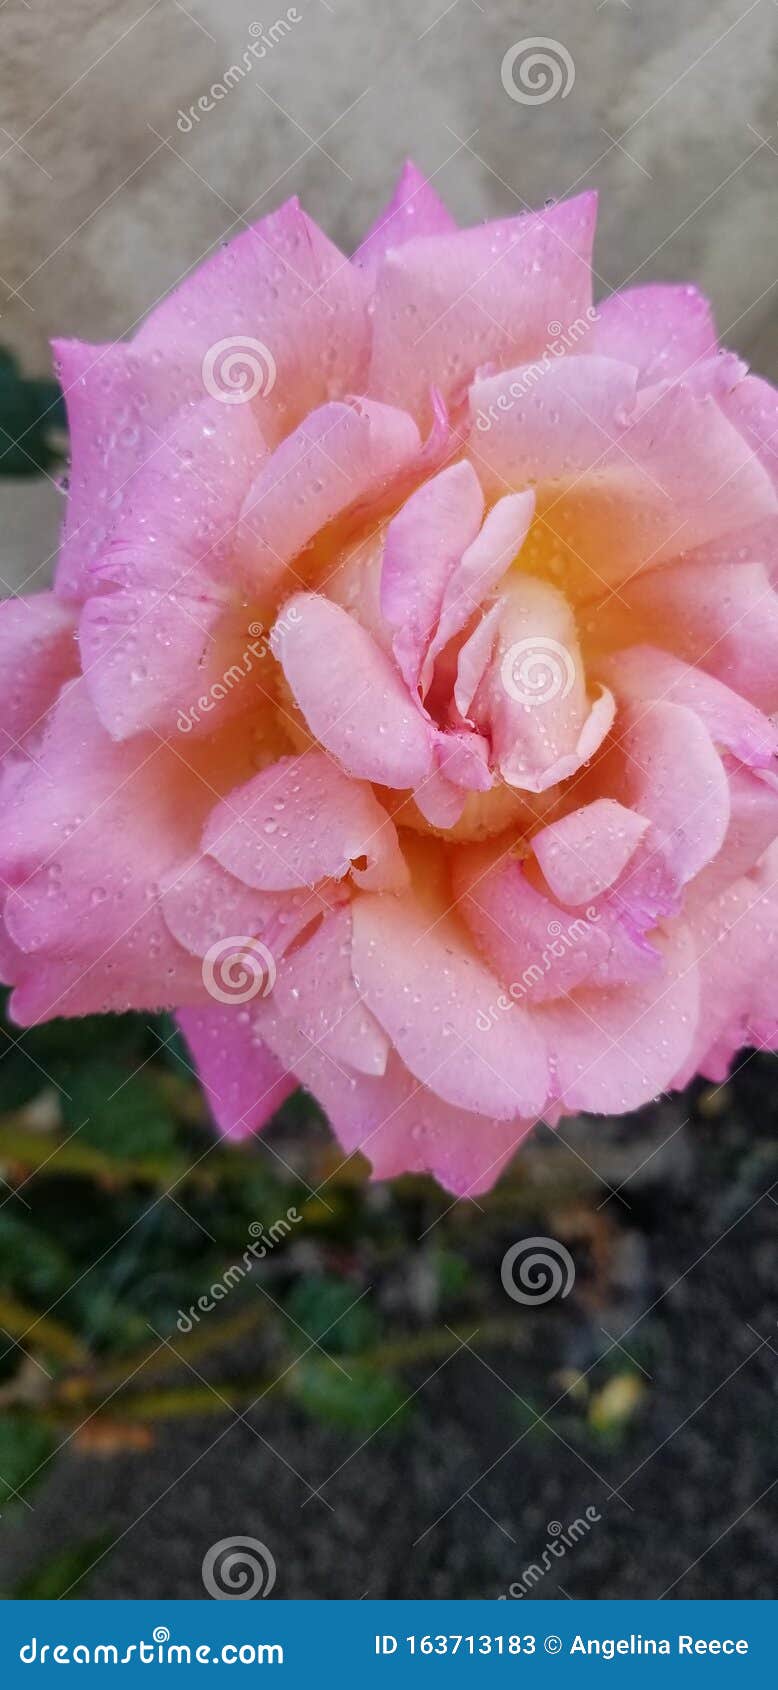 sherbert rose